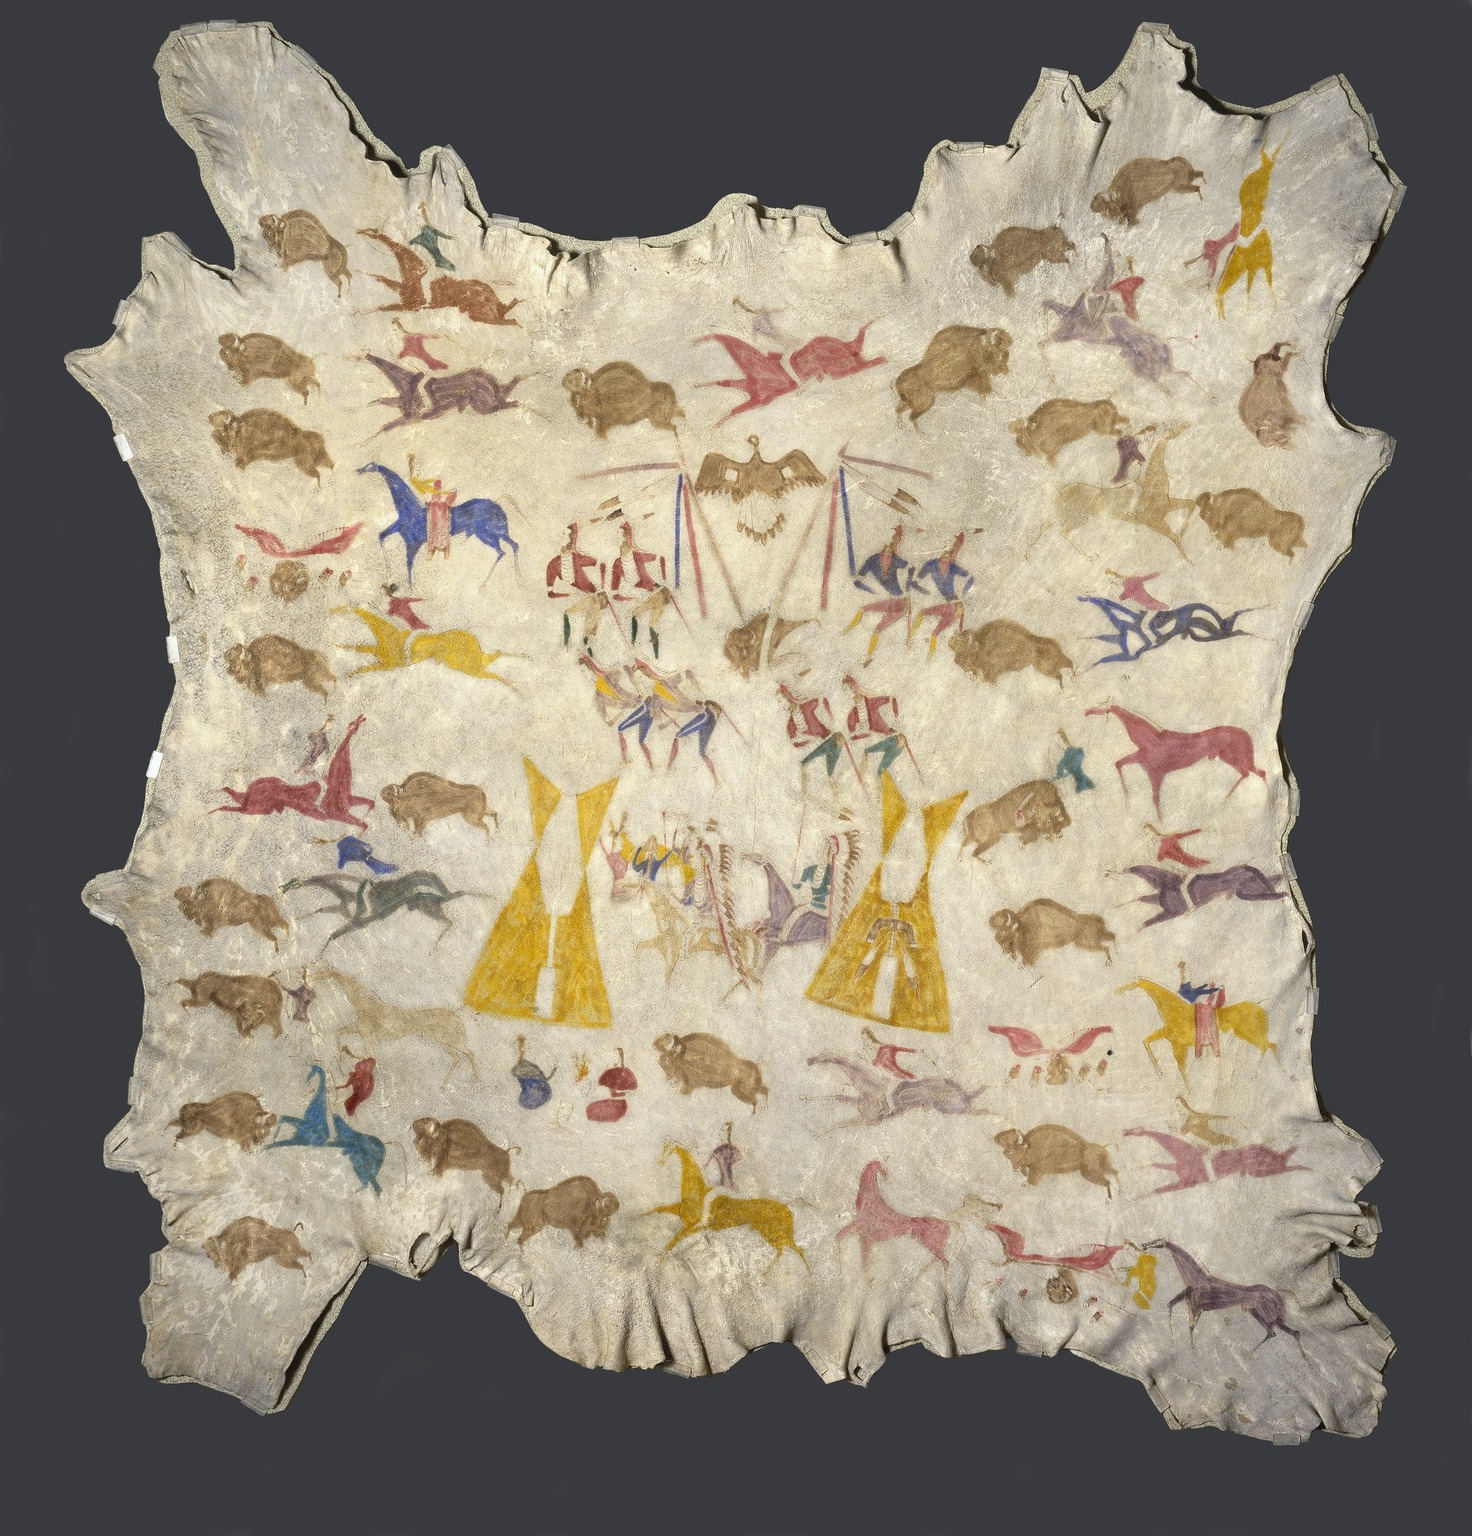 麋鹿皮彩繪 by 科齊奧戈 (卡齊‧科迪) . - 約1900年 - 205.7 x 198.1 釐米 